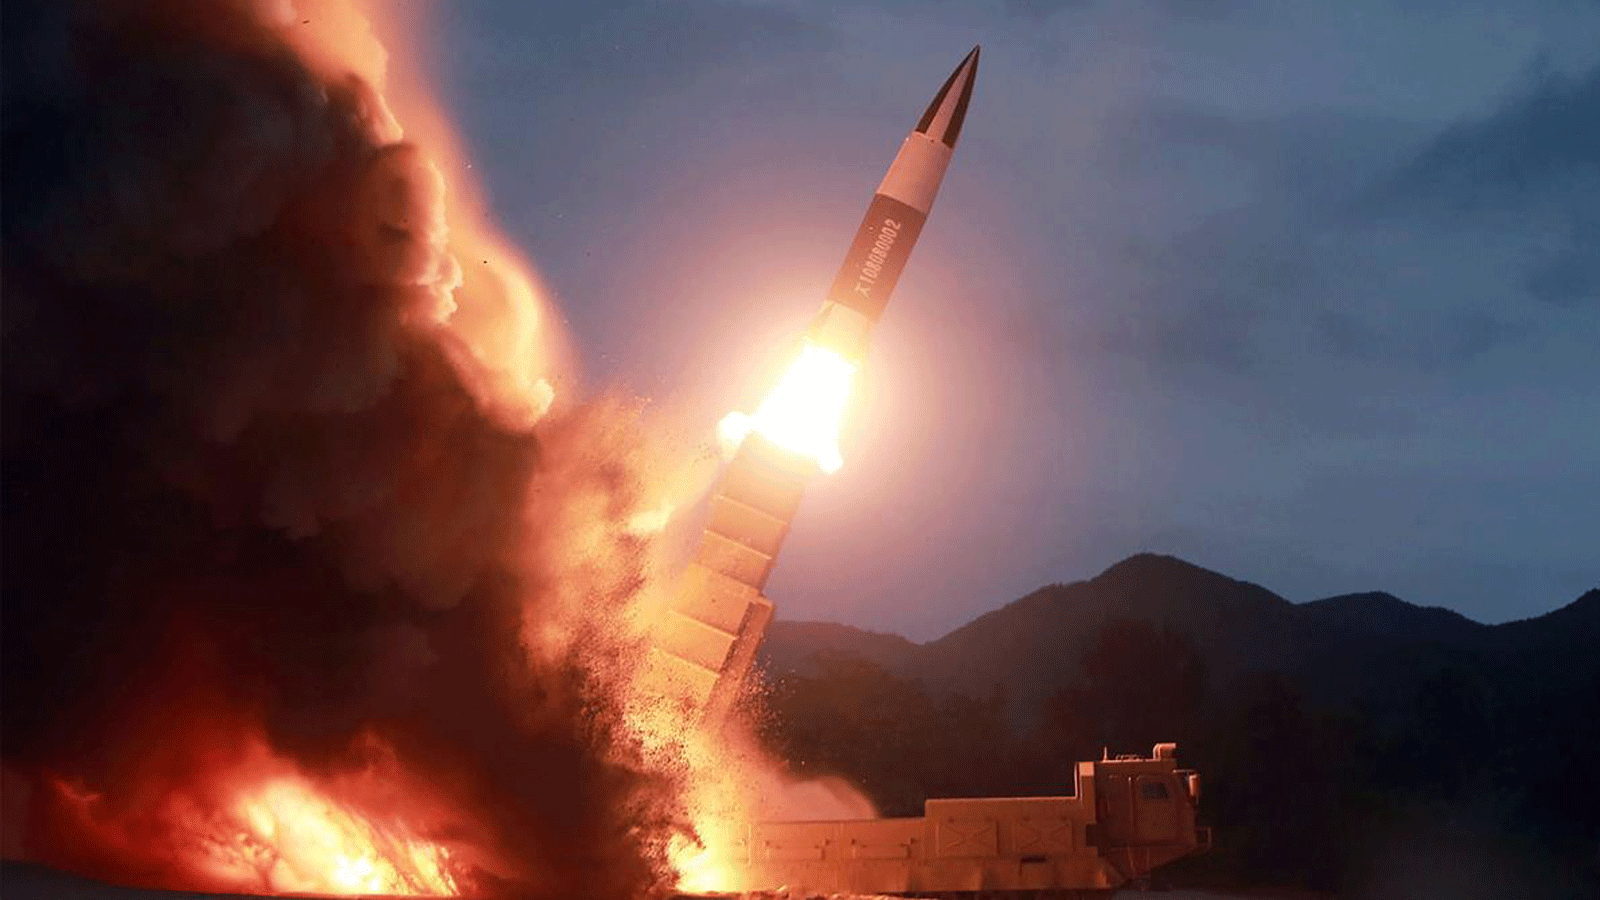  تظهر هذه الصورة التي التقطت في وقت مبكر من 10 آب/ أغسطس 2019 تجربة إطلاق ضاروخ جديد في مكان غير معروف في كوريا الشمالية.